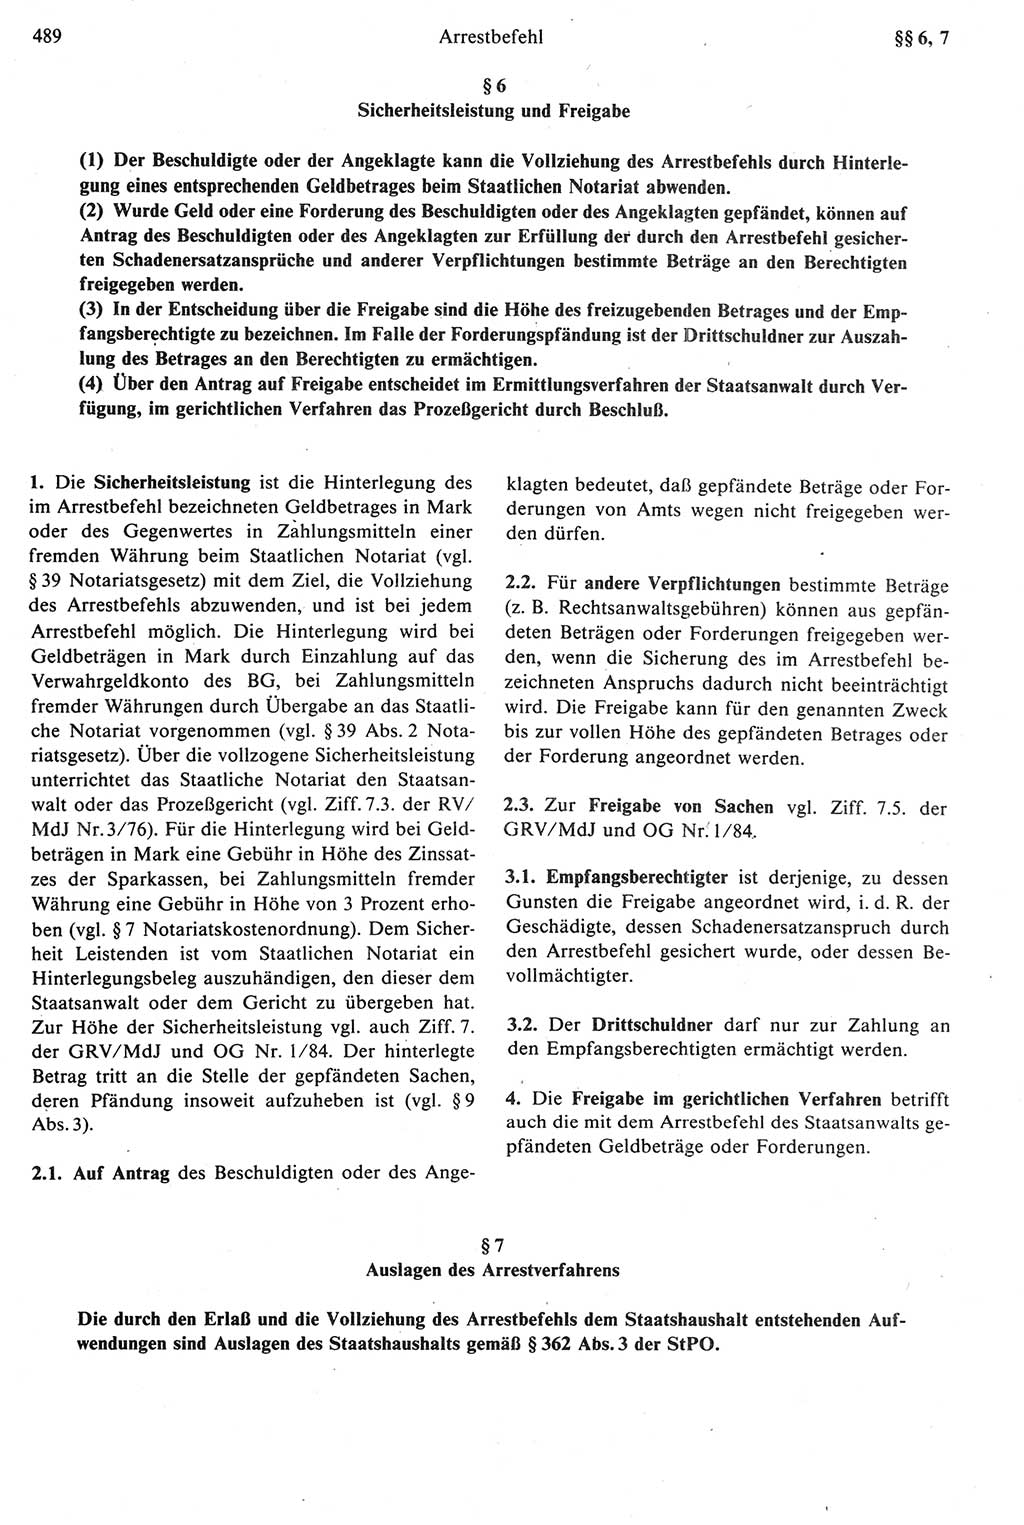 Strafprozeßrecht der DDR [Deutsche Demokratische Republik], Kommentar zur Strafprozeßordnung (StPO) 1987, Seite 489 (Strafprozeßr. DDR Komm. StPO 1987, S. 489)